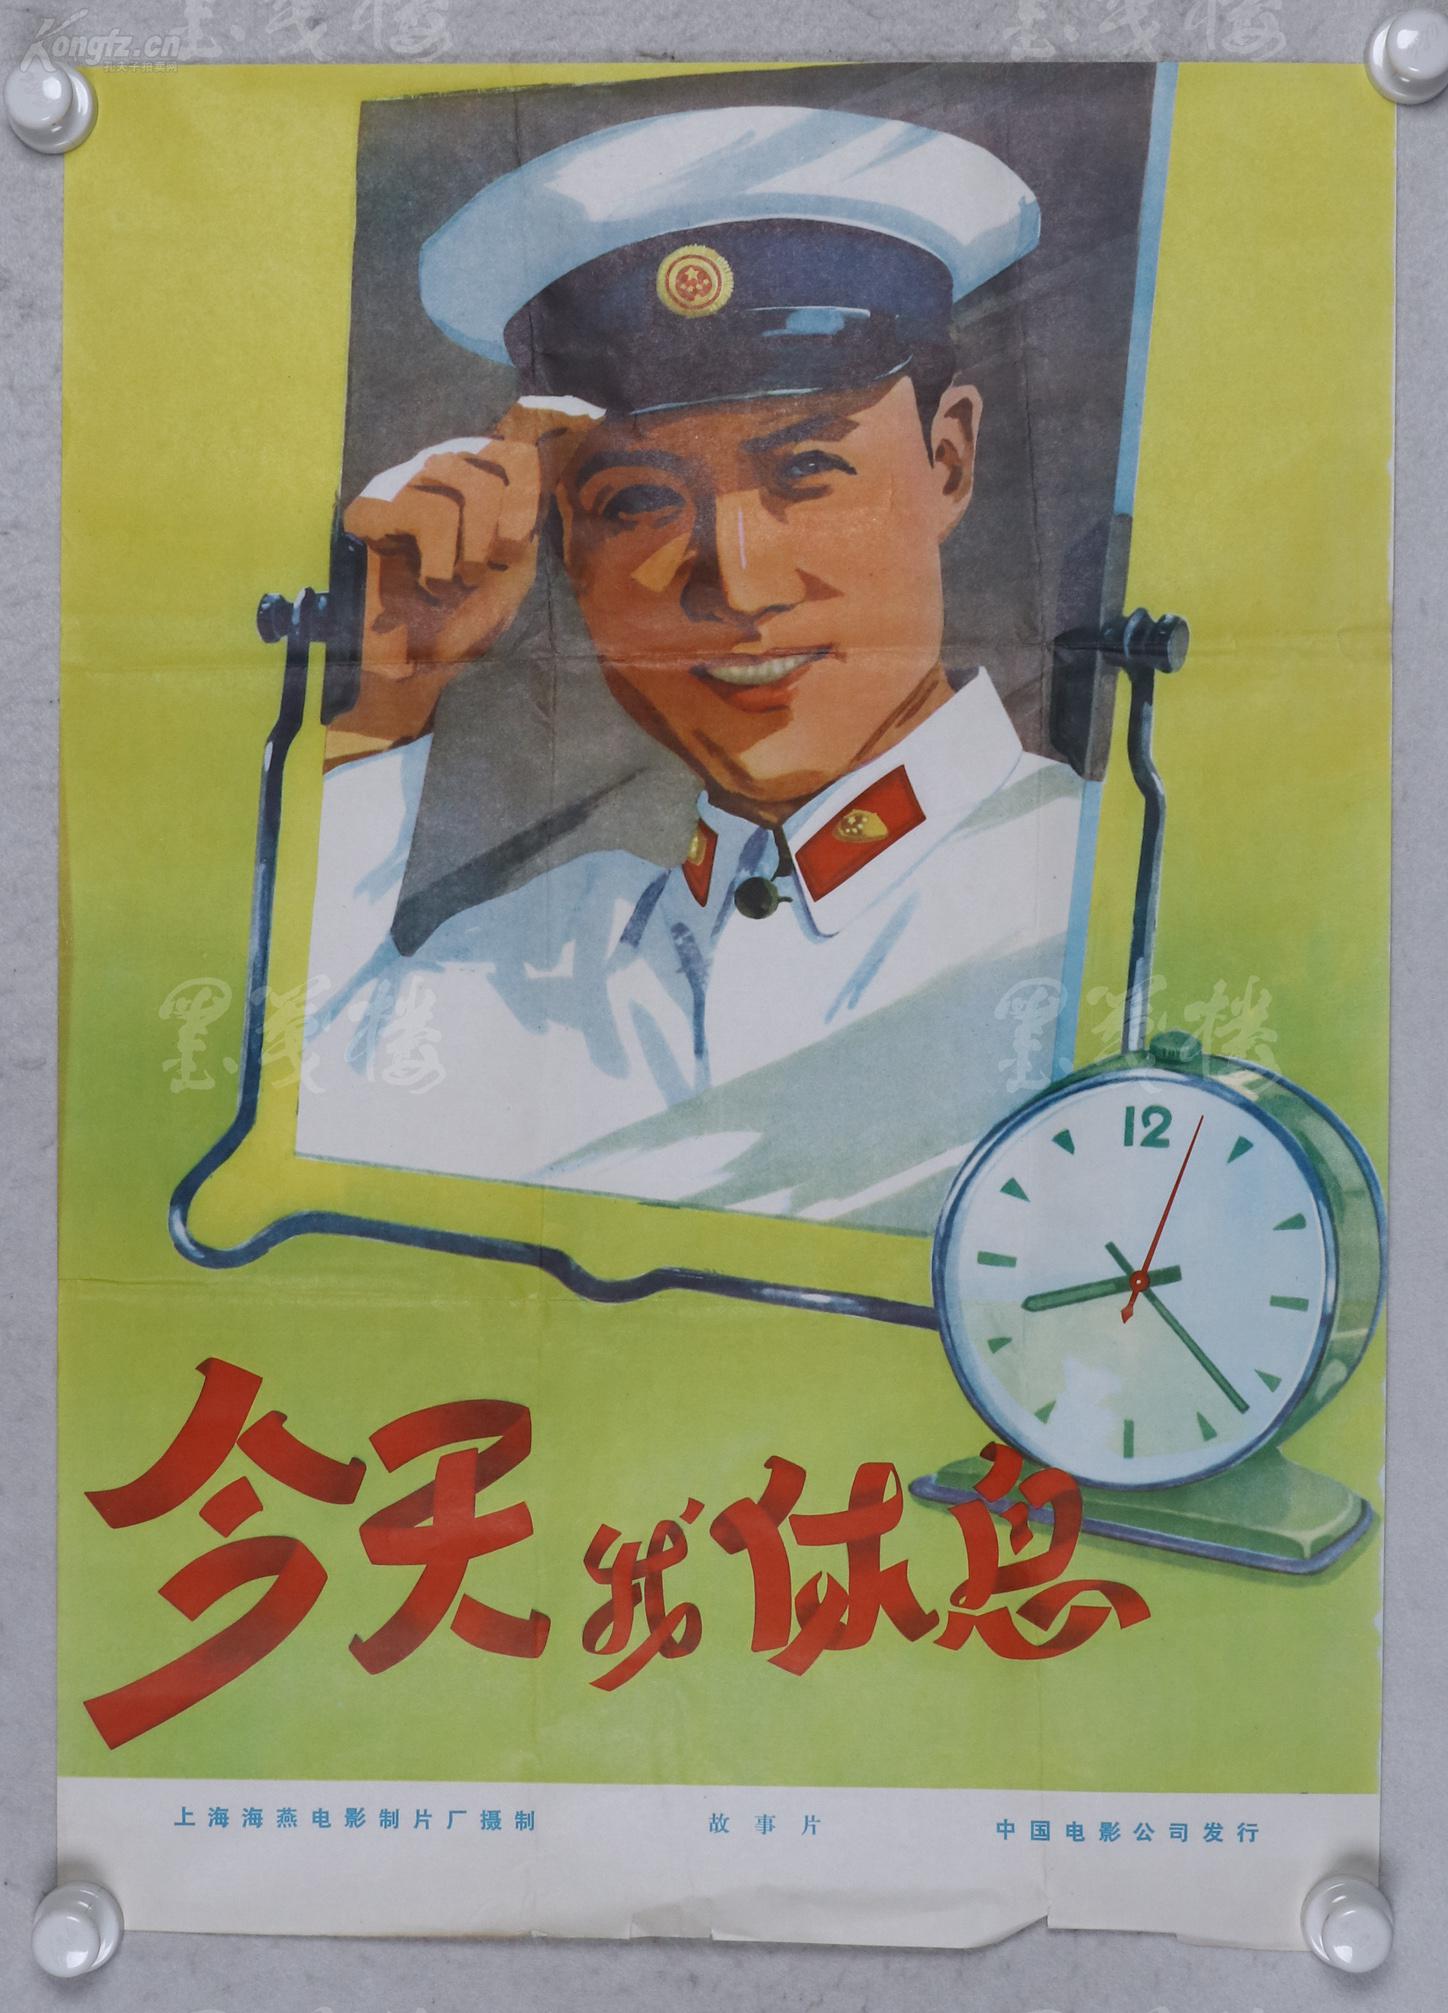 赵-庆-伟收藏:五十年代 上海海燕电影制片厂 中国电影